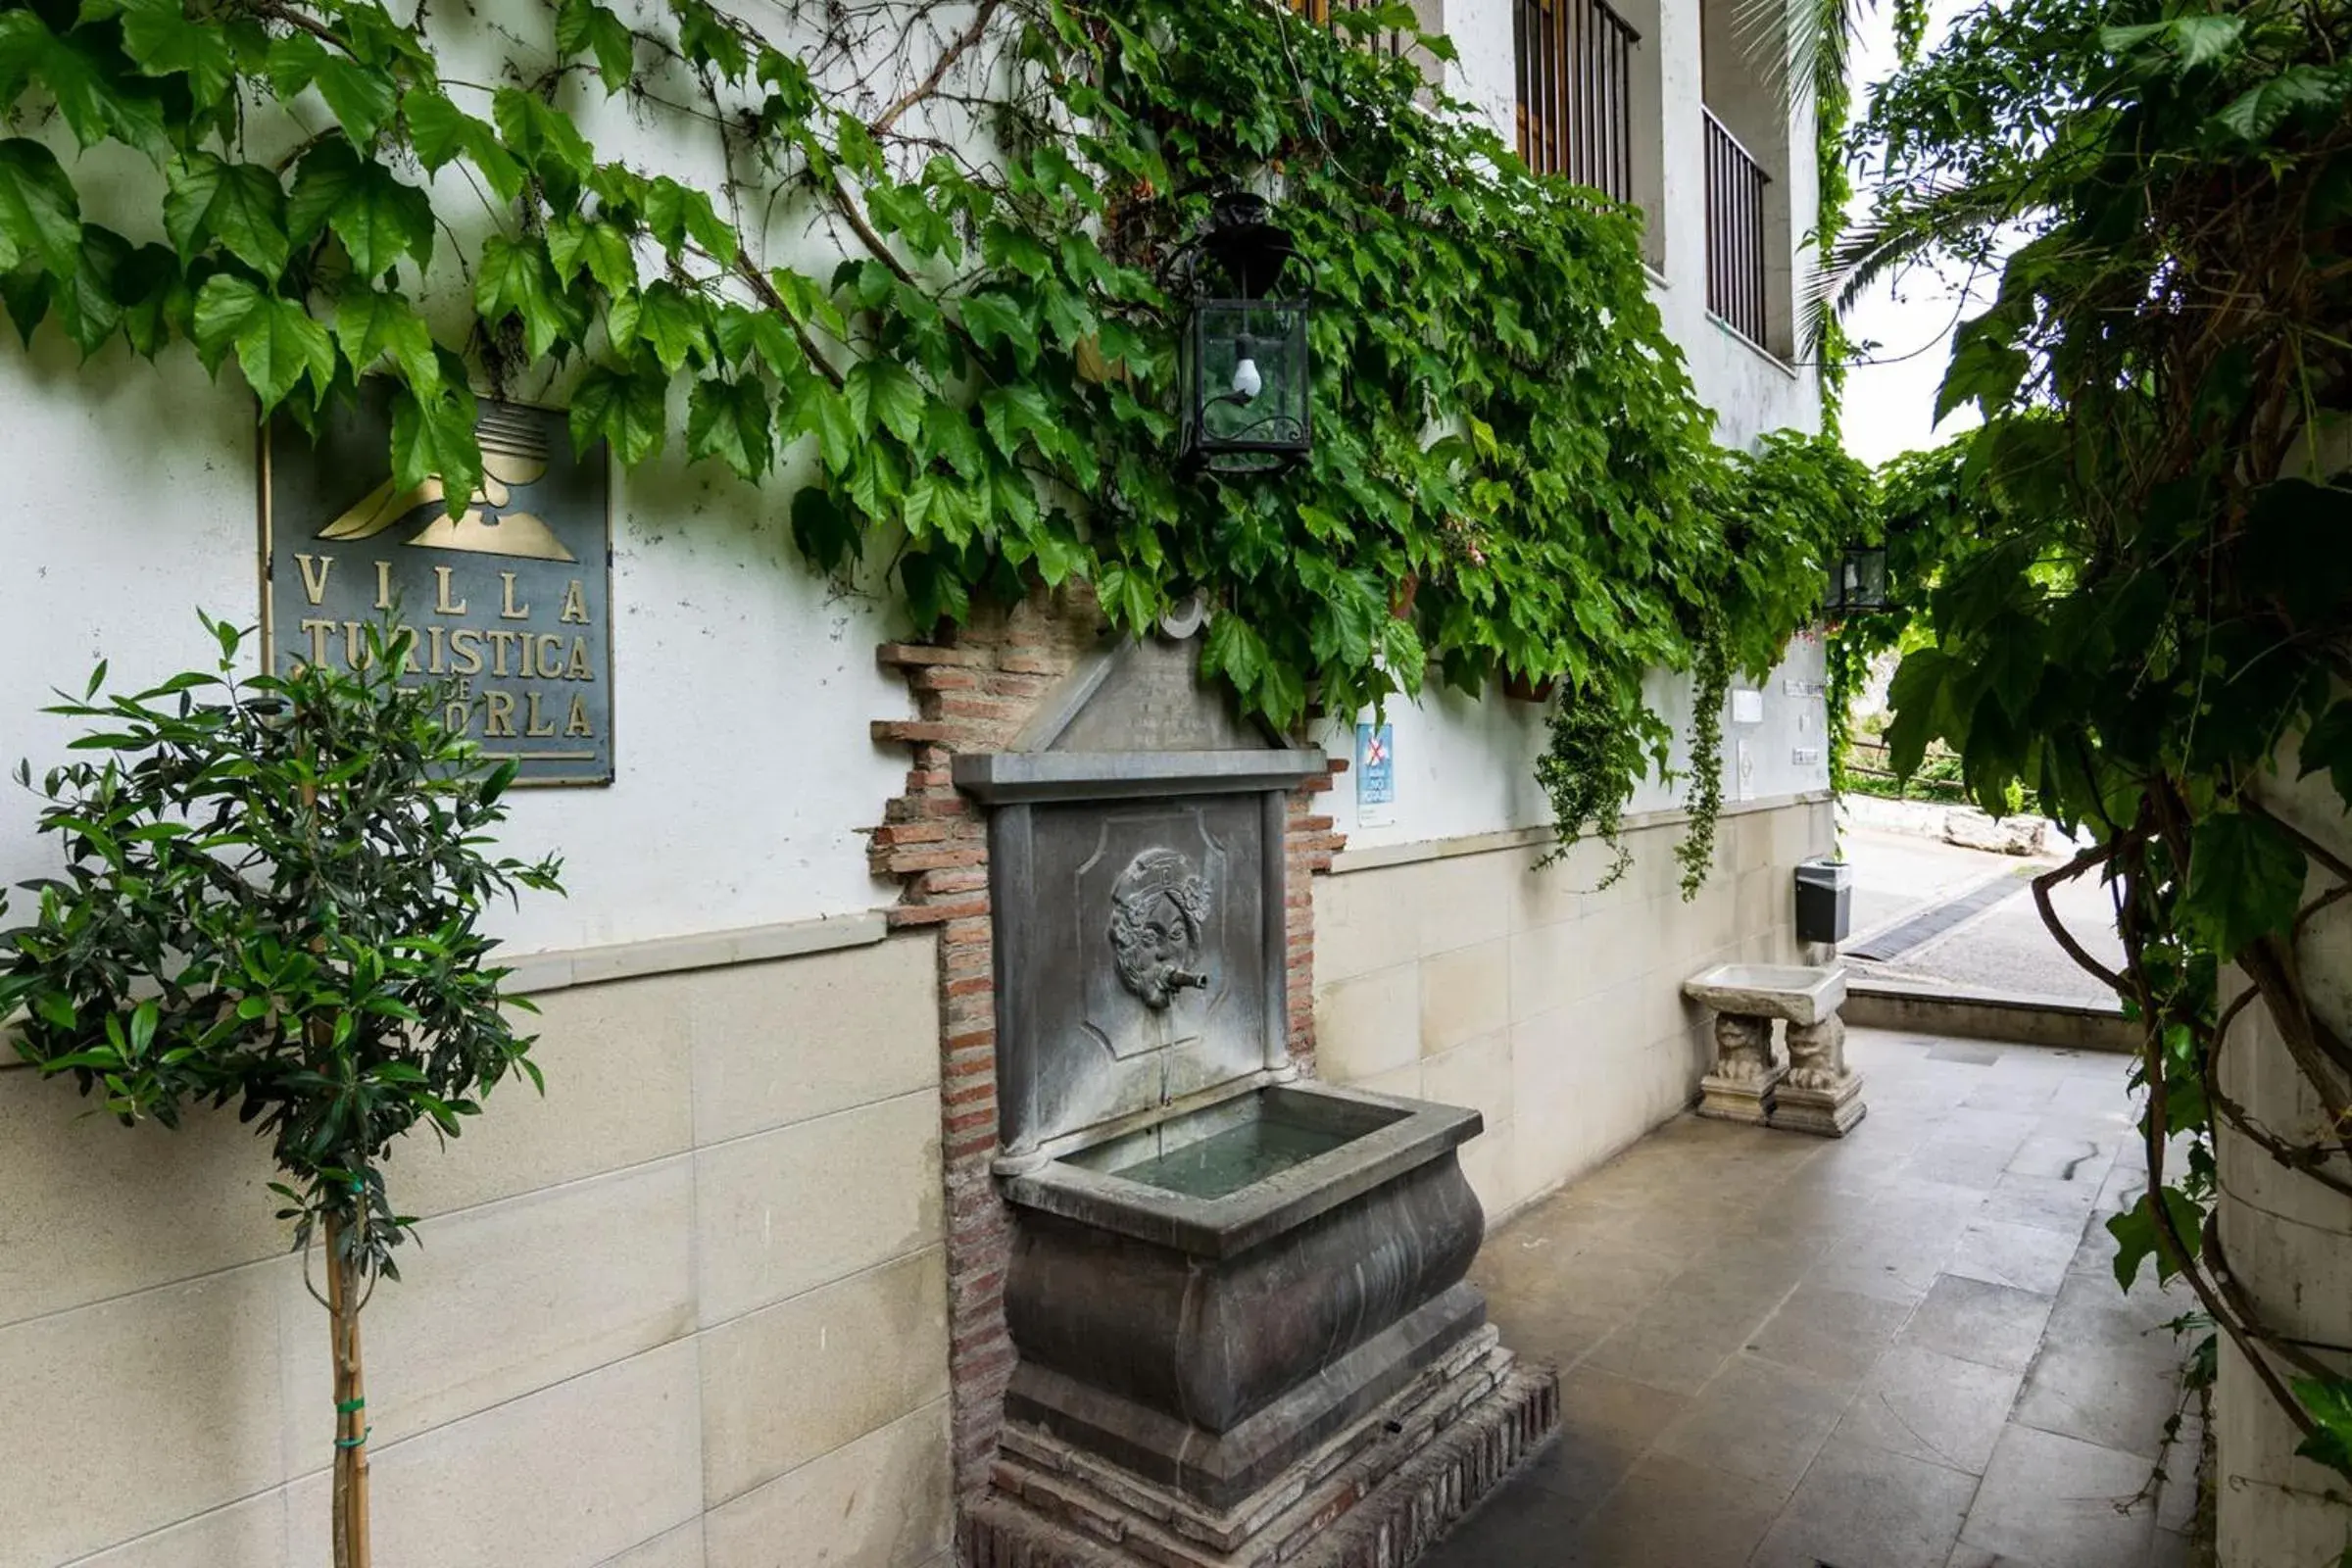 Facade/entrance in Villa Turistica de Cazorla